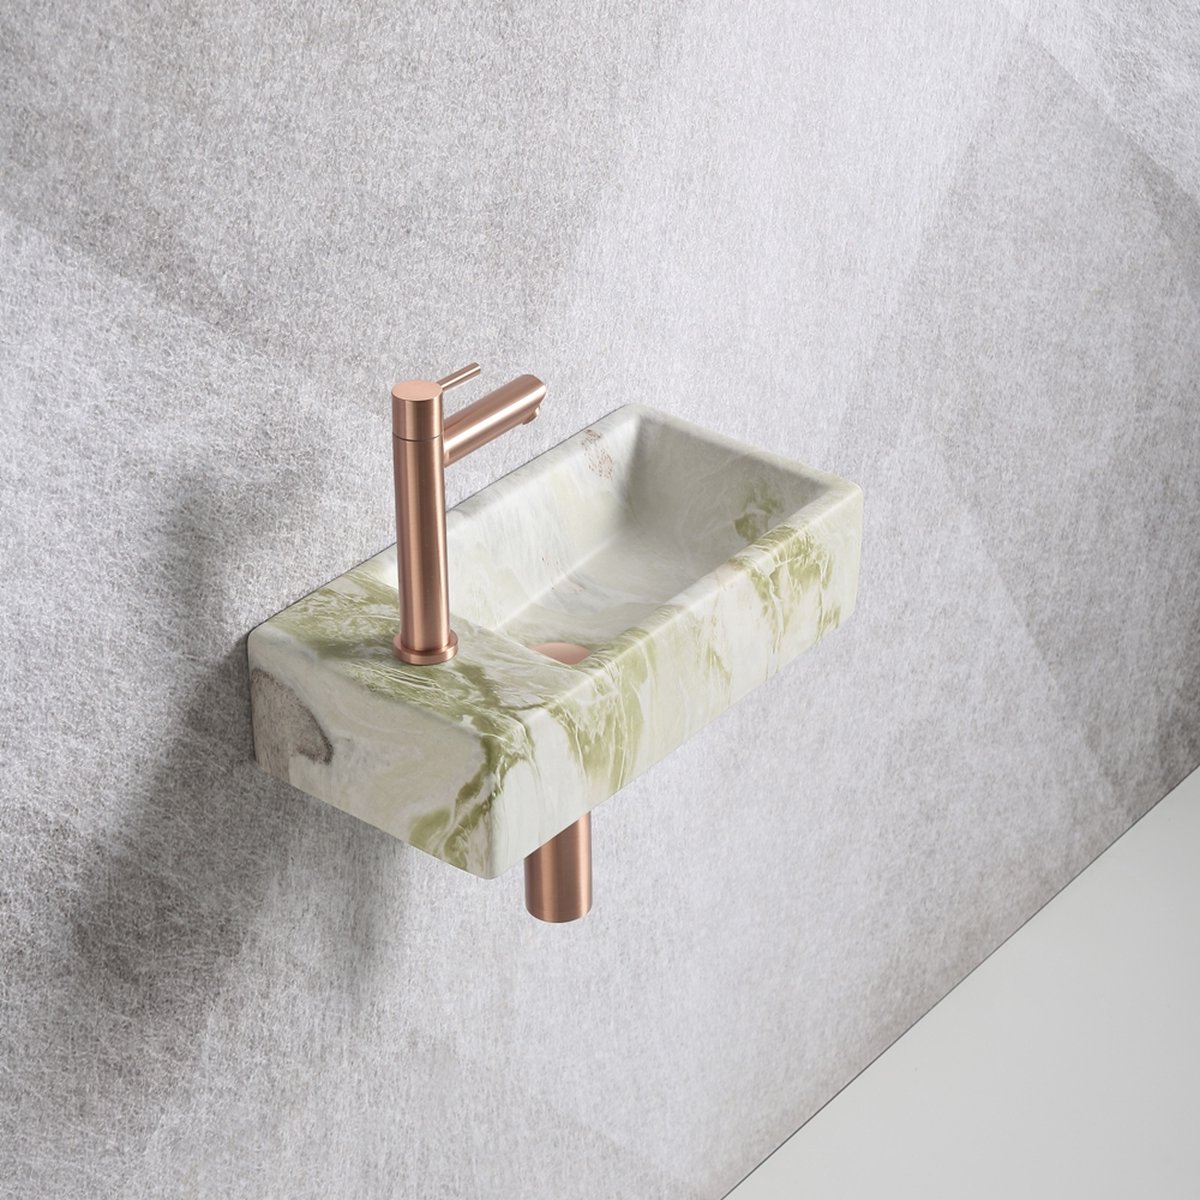 Fonteinset Mia 40.5x20x10.5cm marmerlook wit groen links inclusief fontein kraan, sifon en afvoerplug mat rose goud